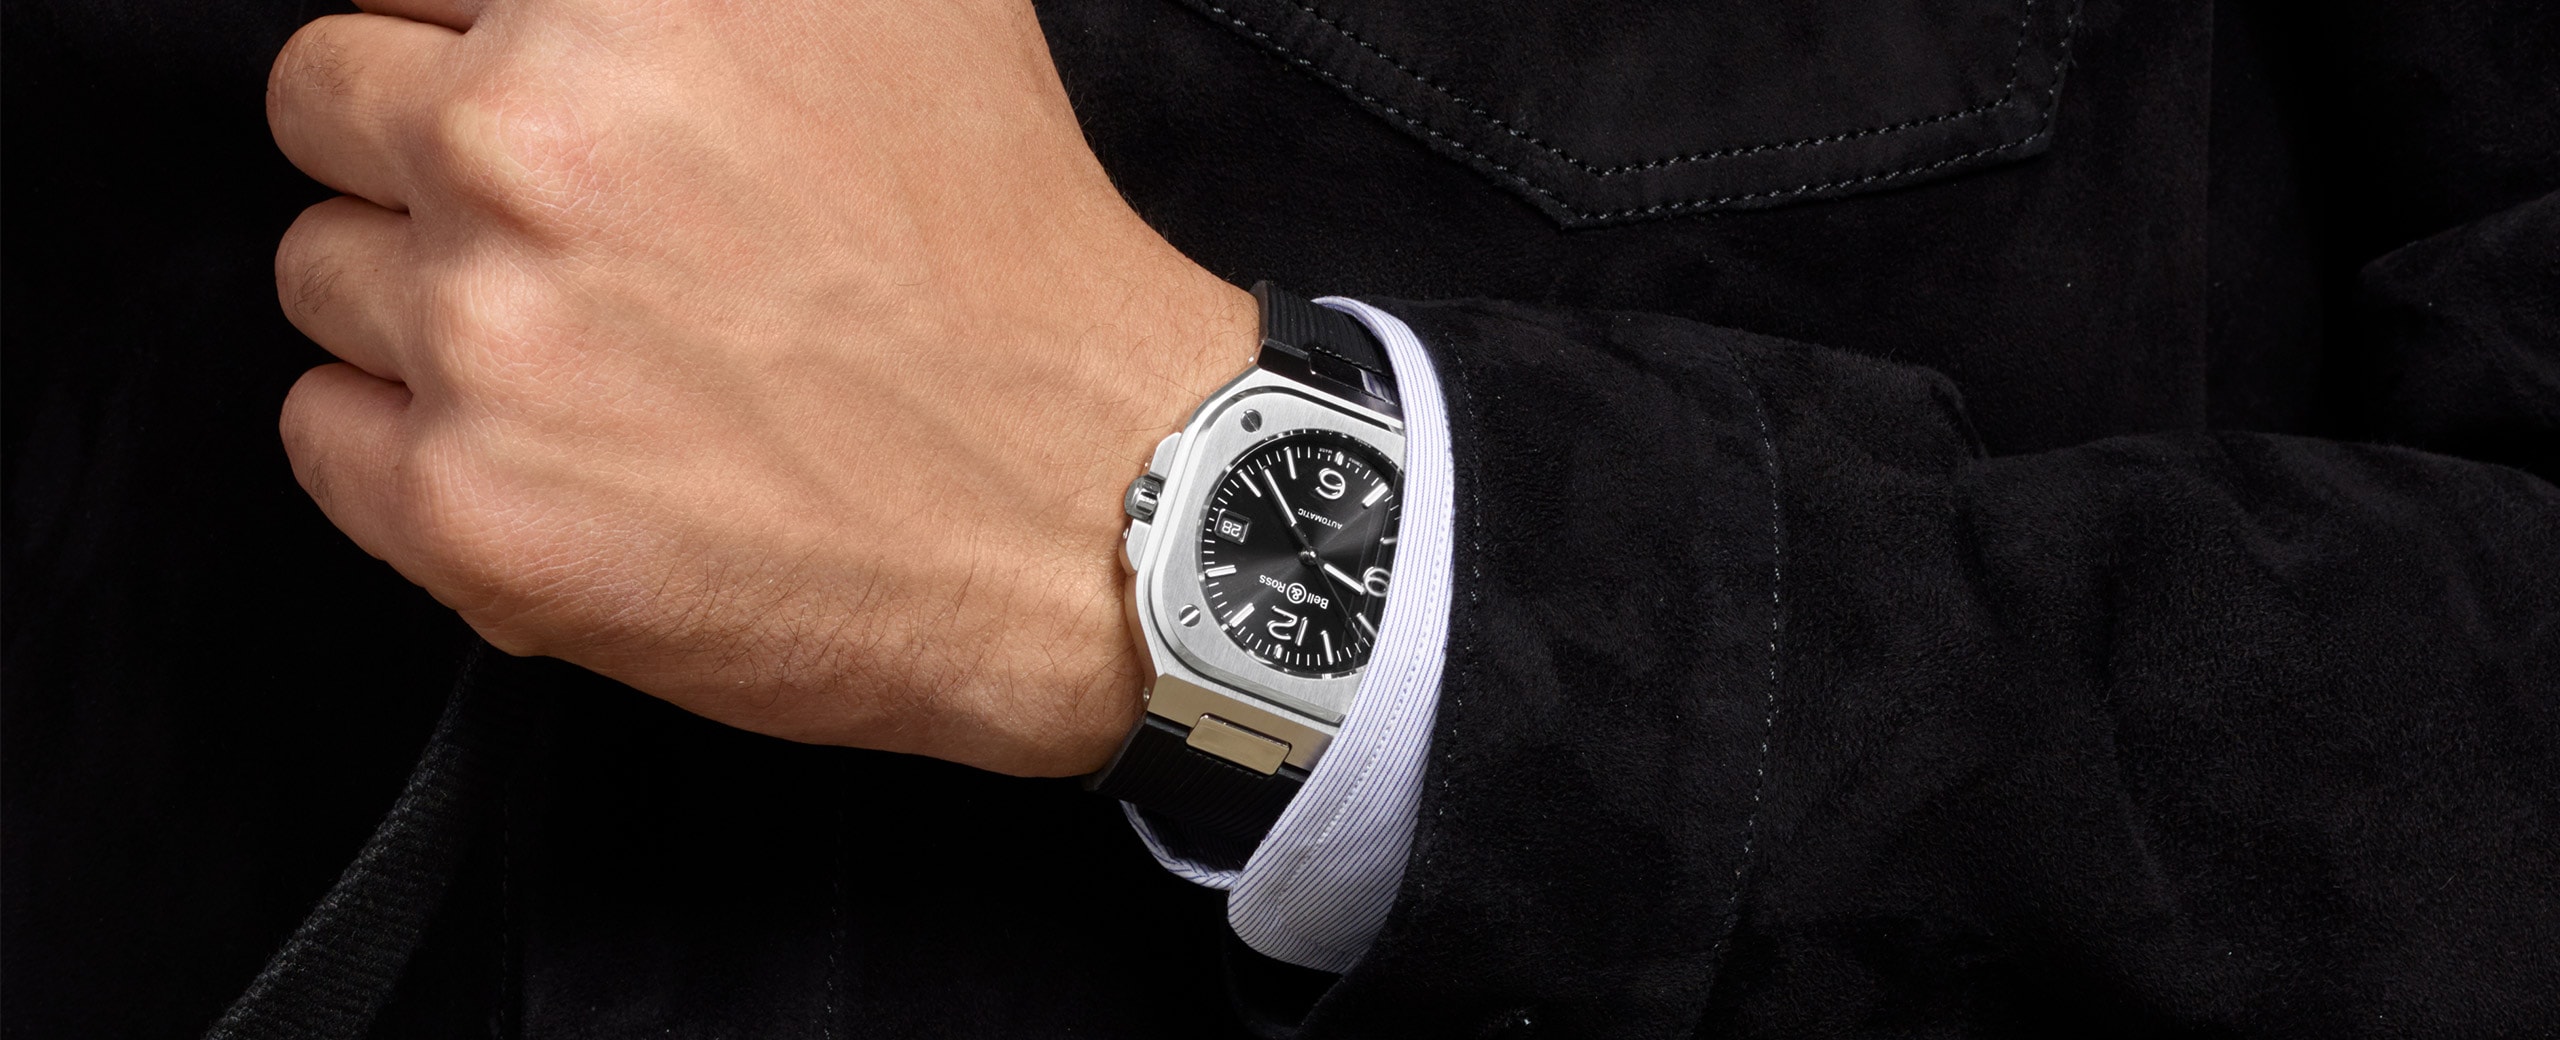 ベル＆ロス Bell & Ross BR05A-BL-ST/SST ブラック メンズ 腕時計